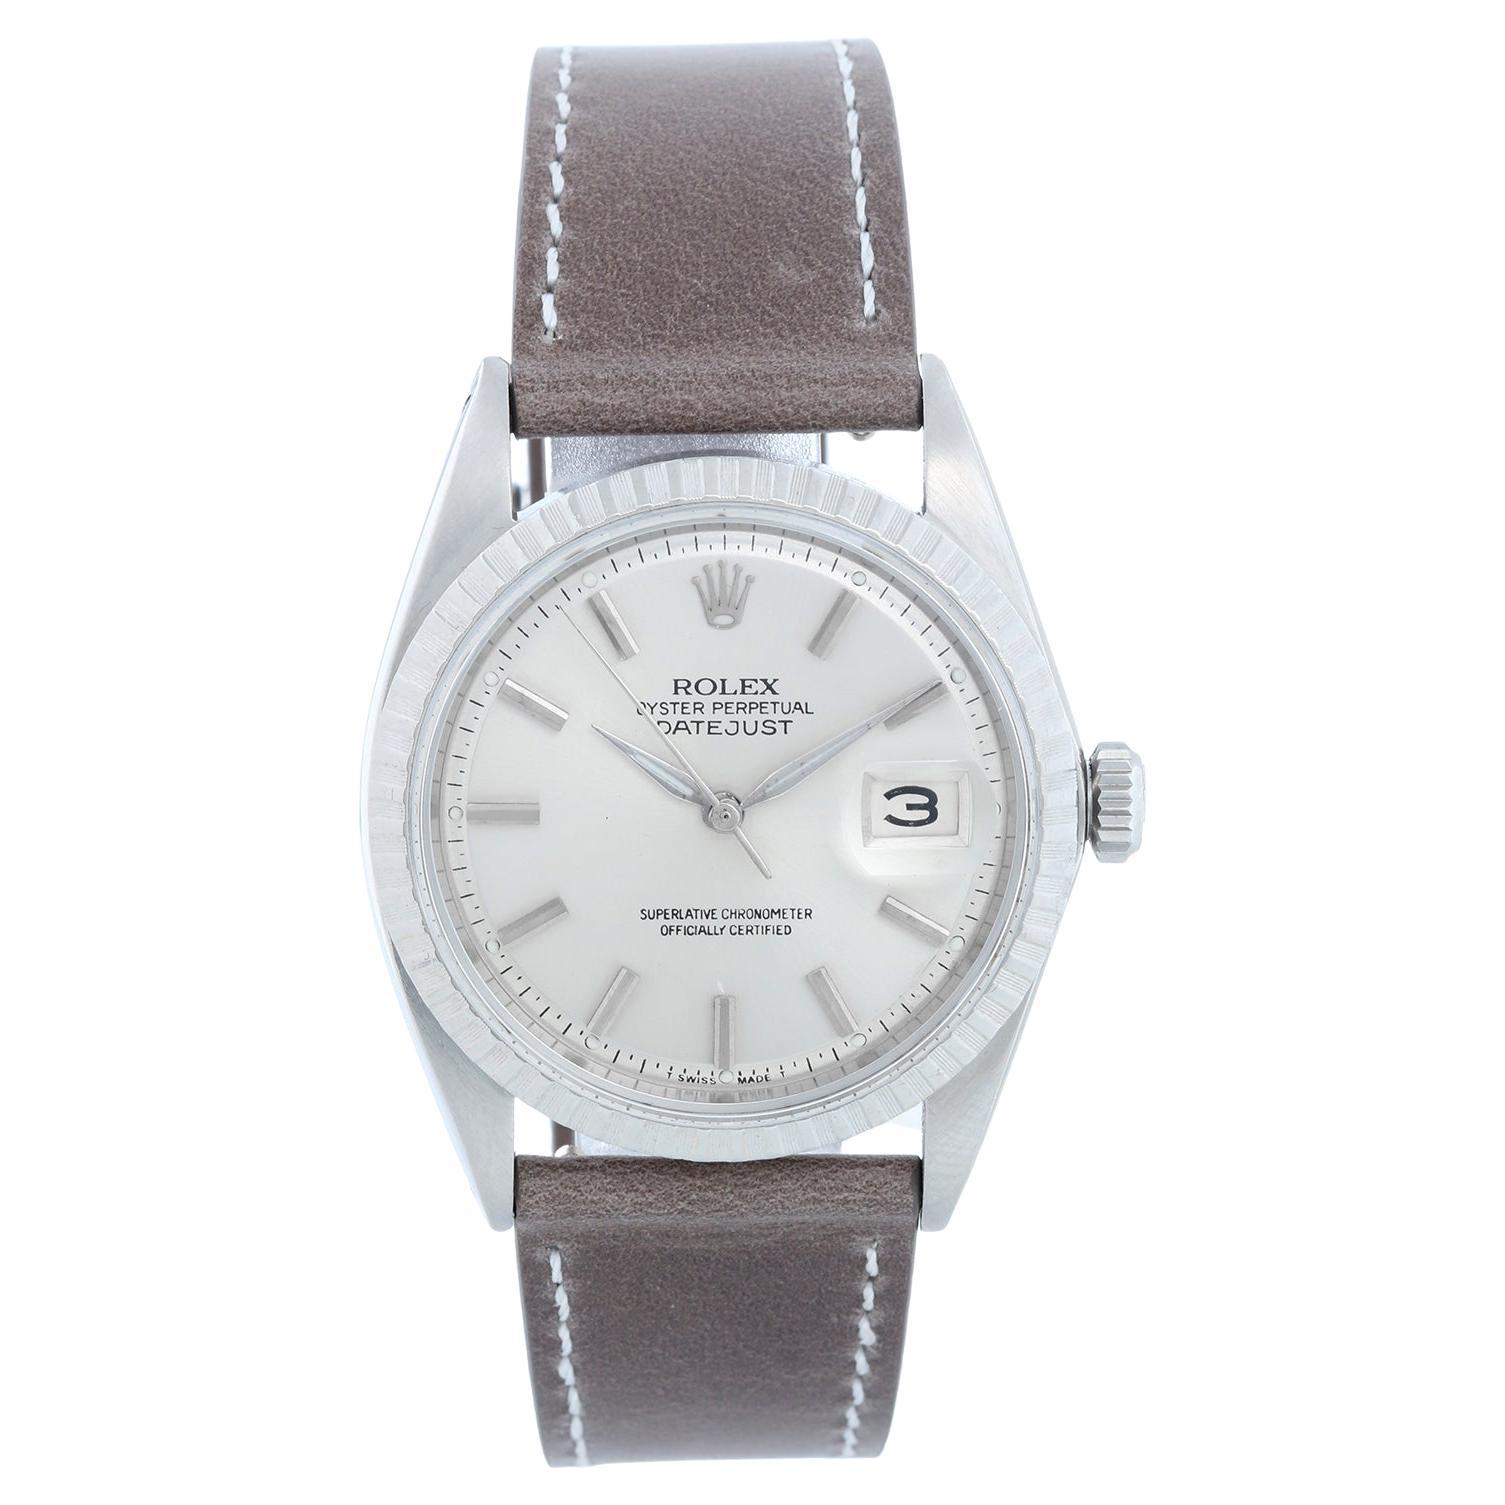 Vintage Rolex Datejust Automatic Men's Watch 1603